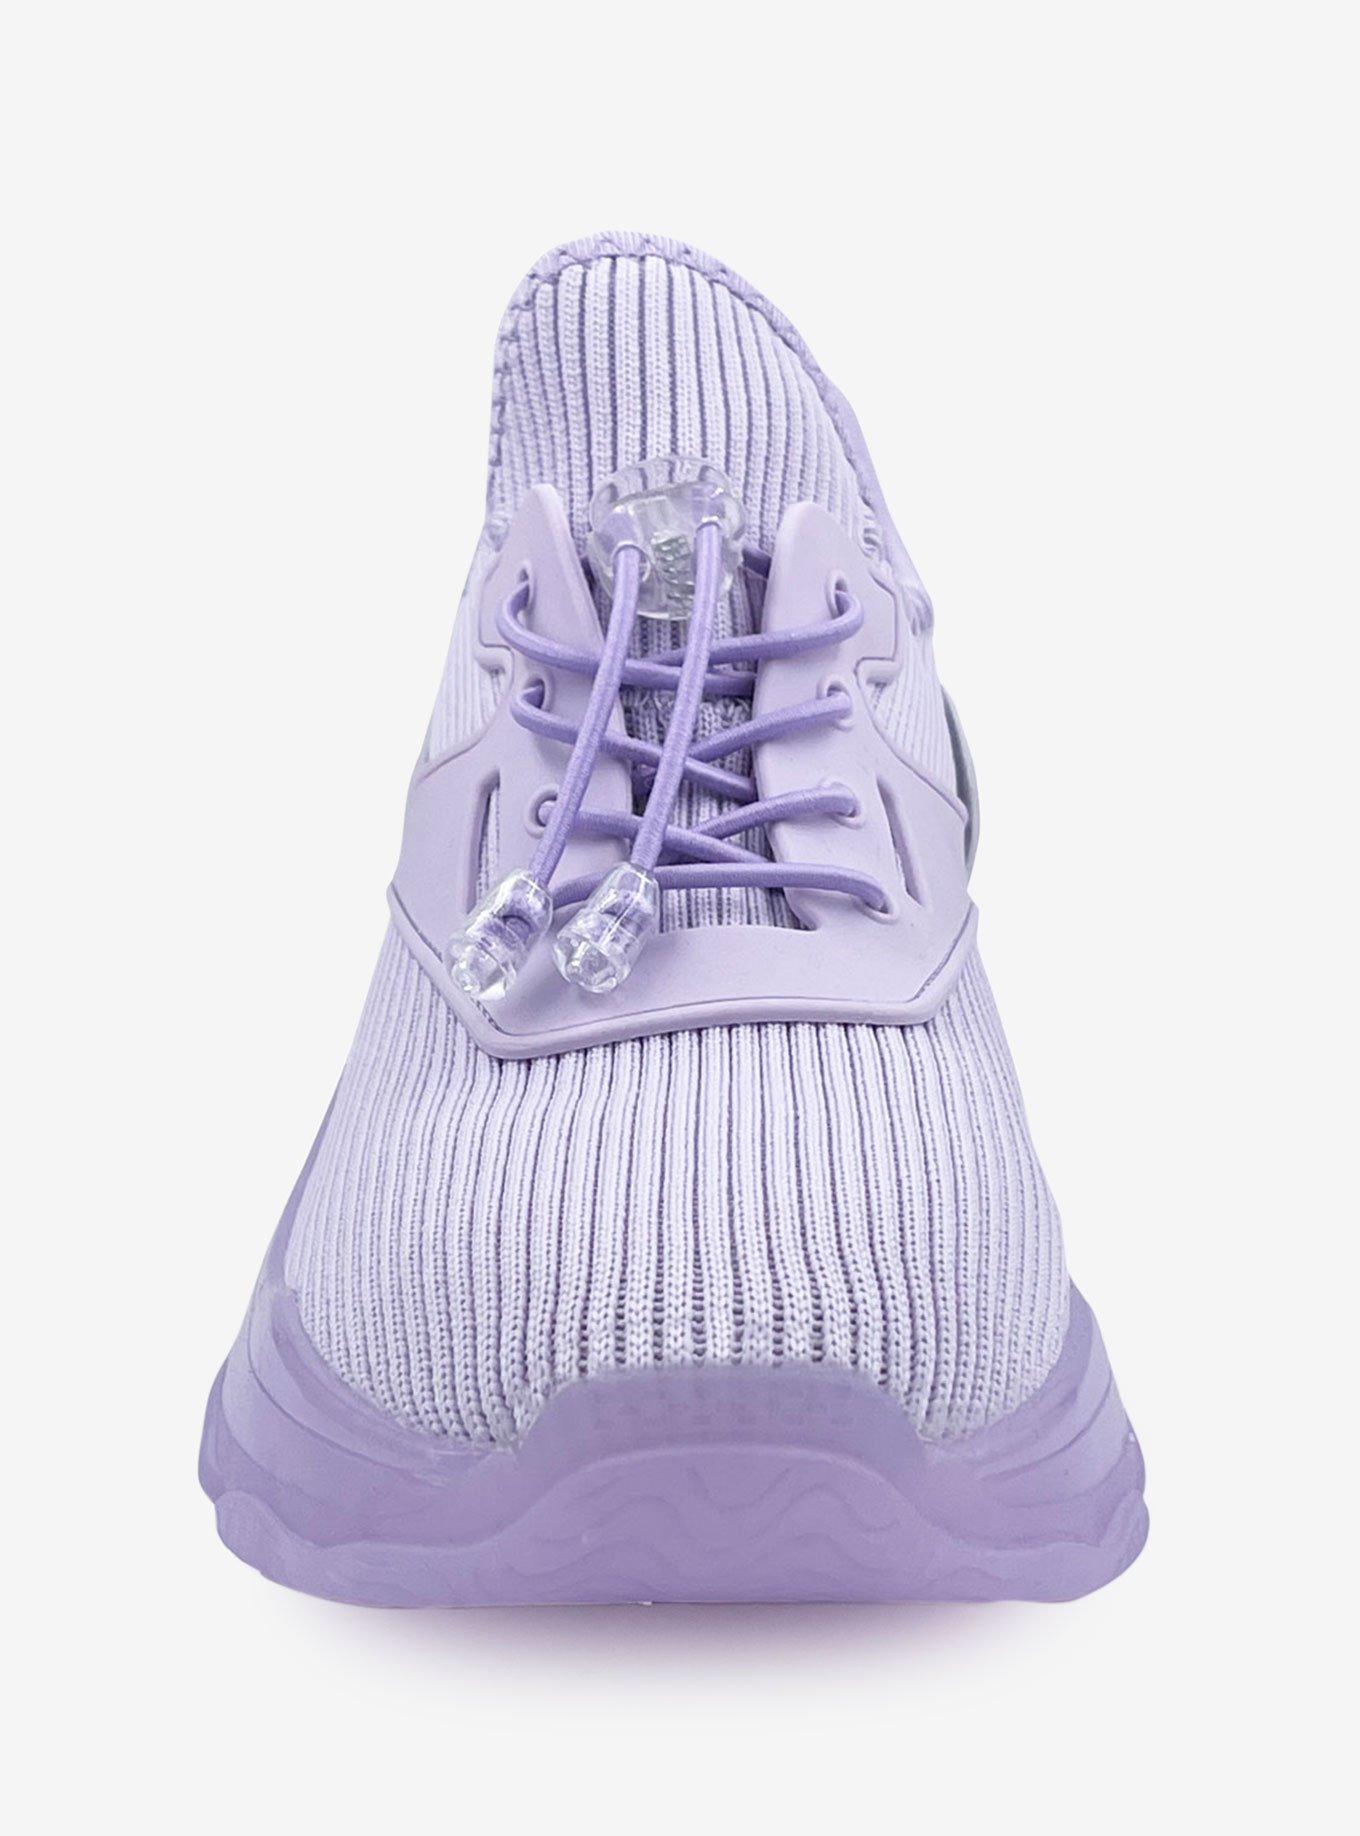 Sloan Knit Upper Sneaker with Chunky Bottom Purple, PURPLE, alternate